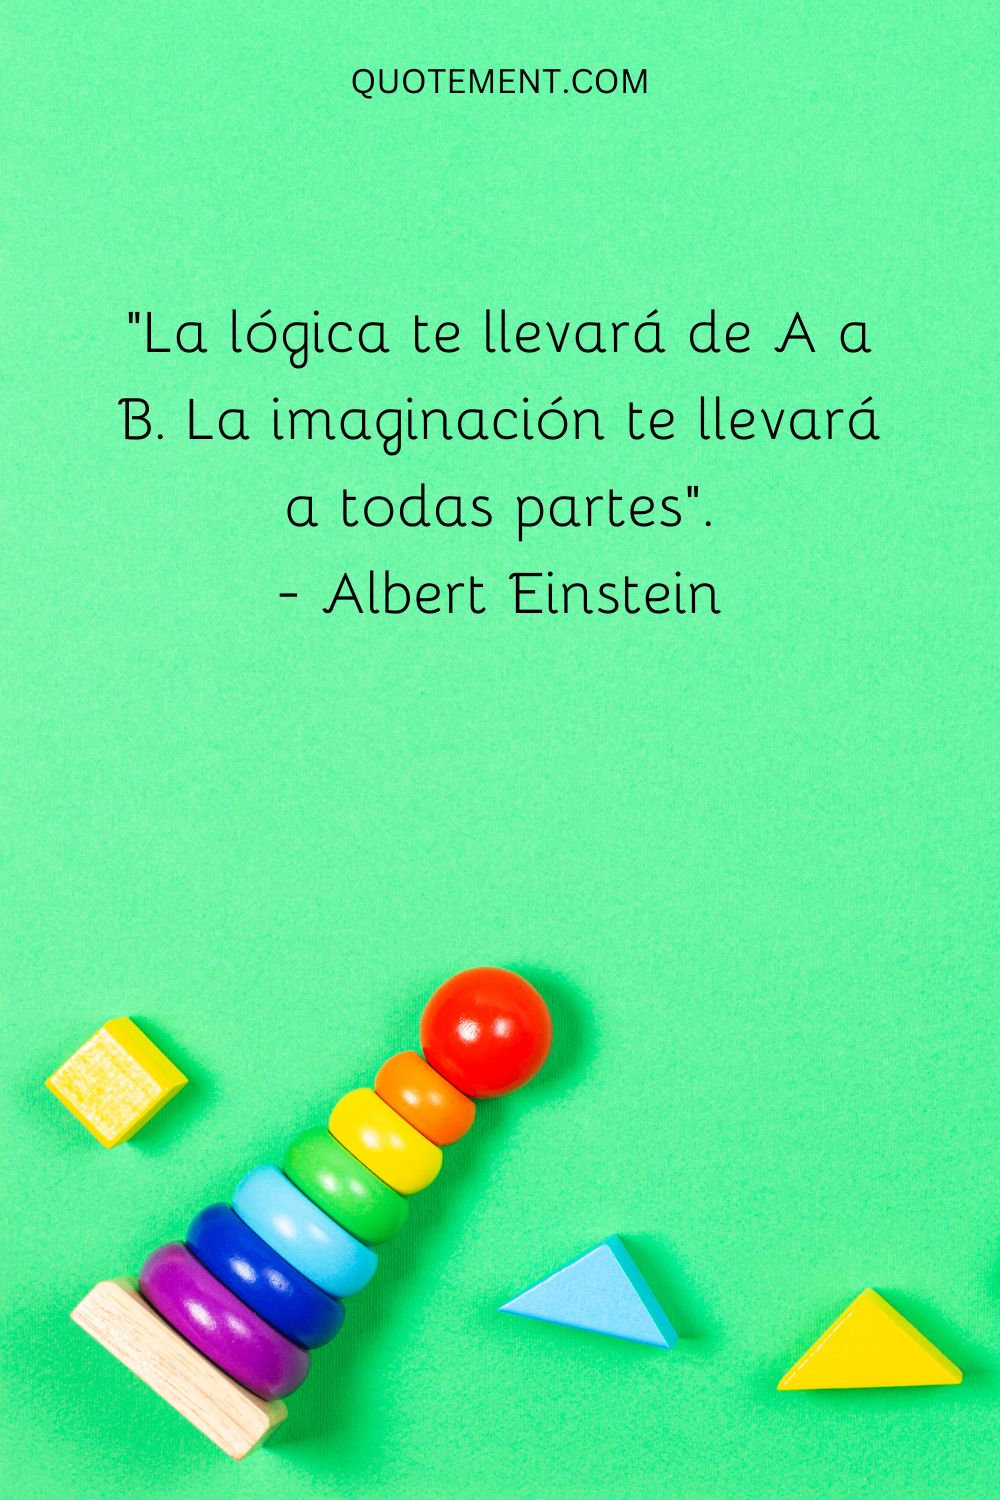 La lógica te llevará de A a B. La imaginación te llevará a todas partes.